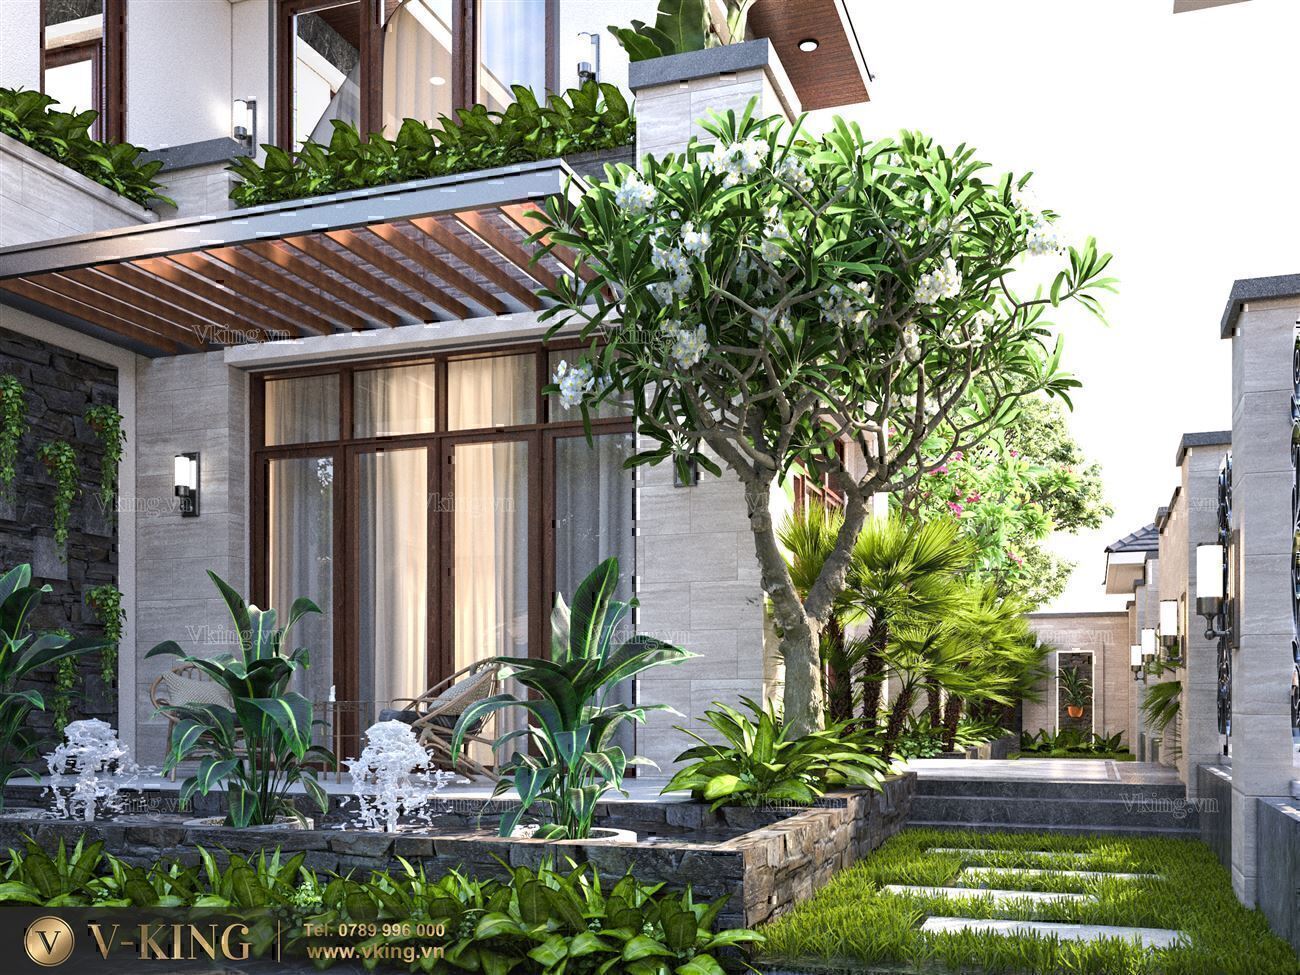 Công ty hàng đầu trong lĩnh vực thiết kế nhà đẹp tại Lào Cai